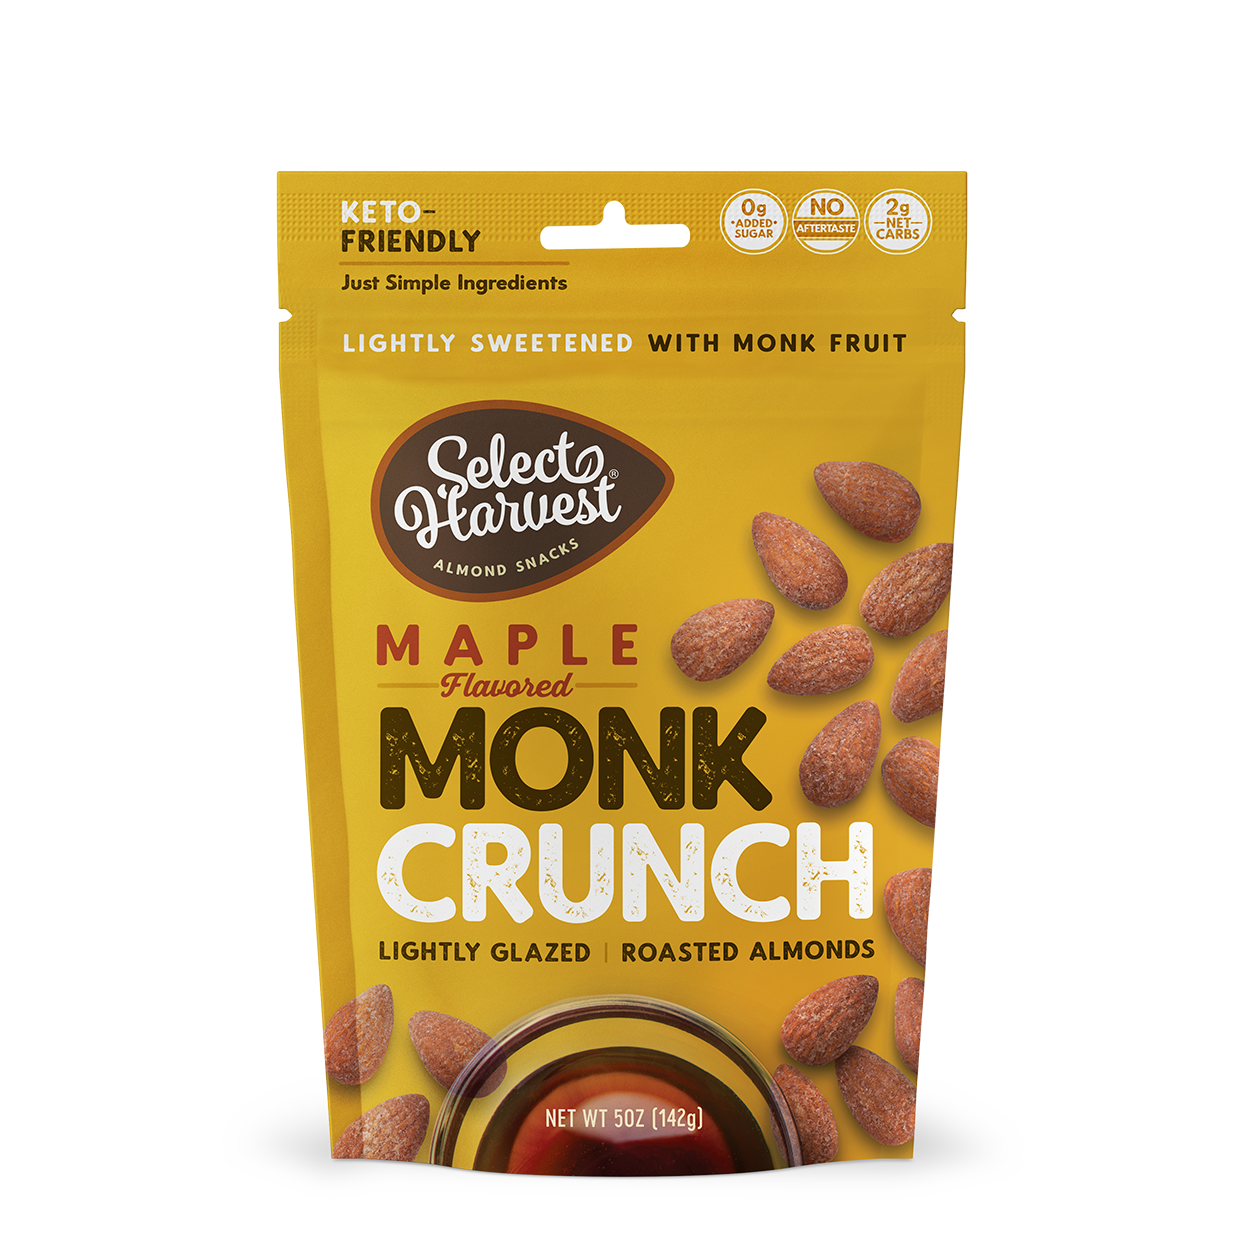 Maple Monk Crunch Almonds - New Formulation!